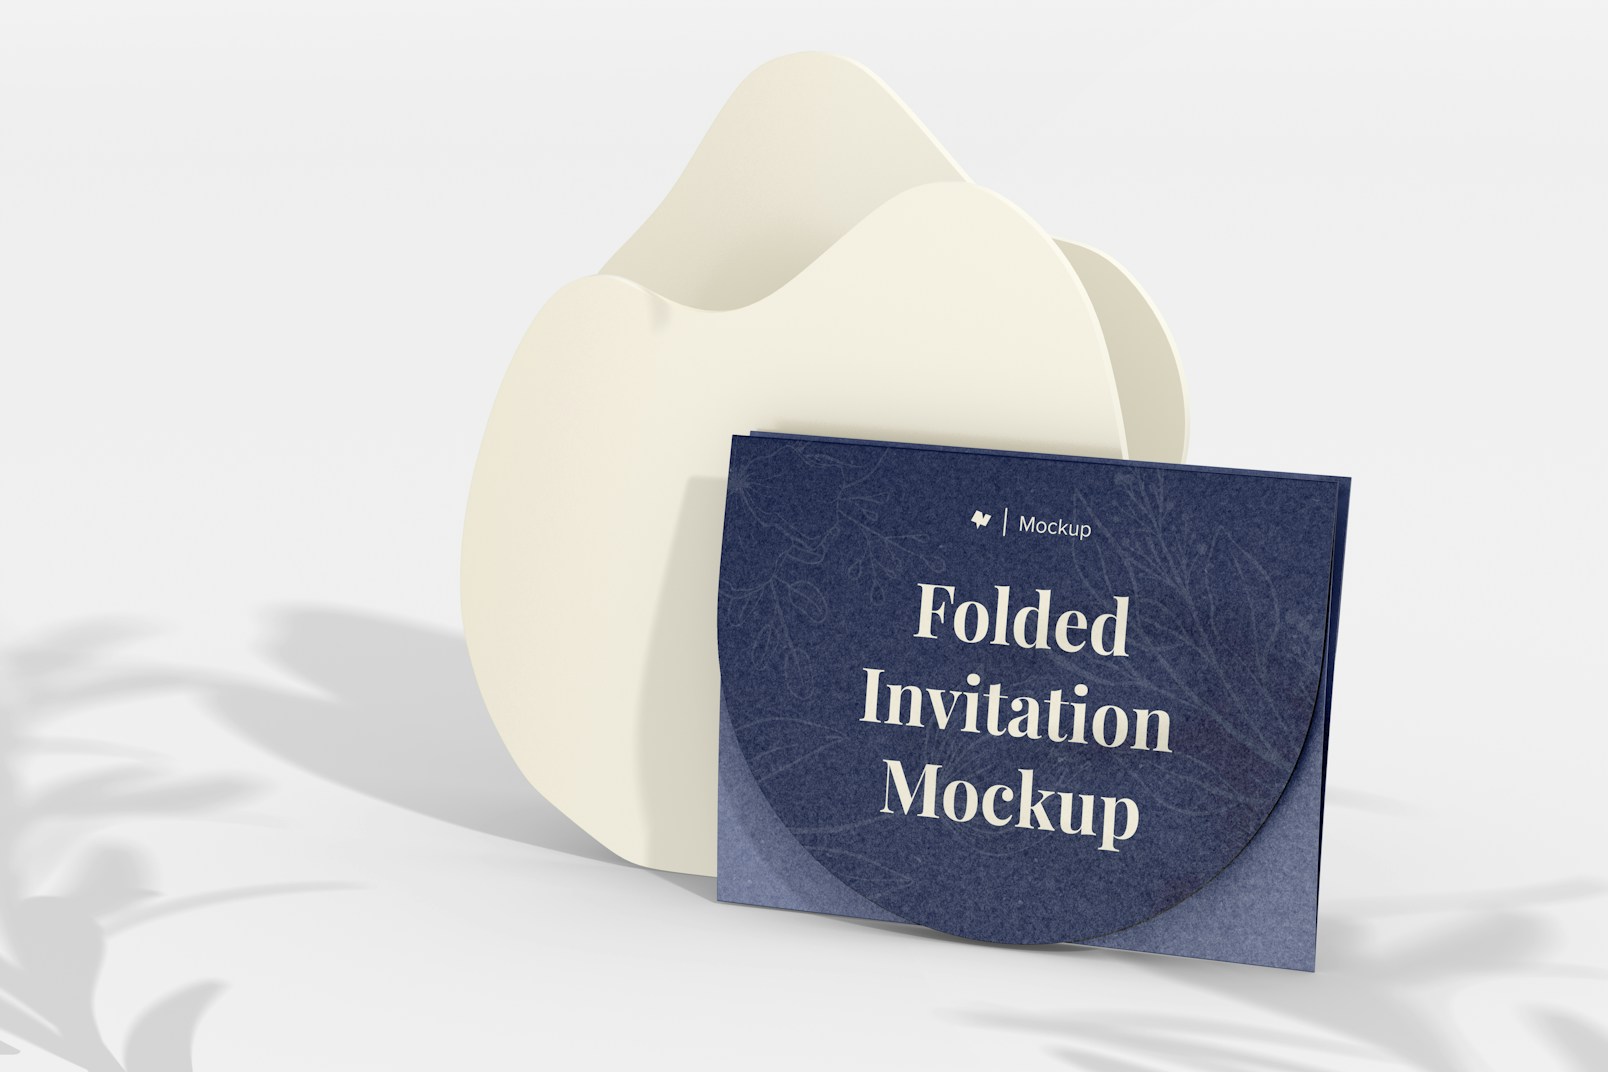 Folded Invitation Mockup, with Podium